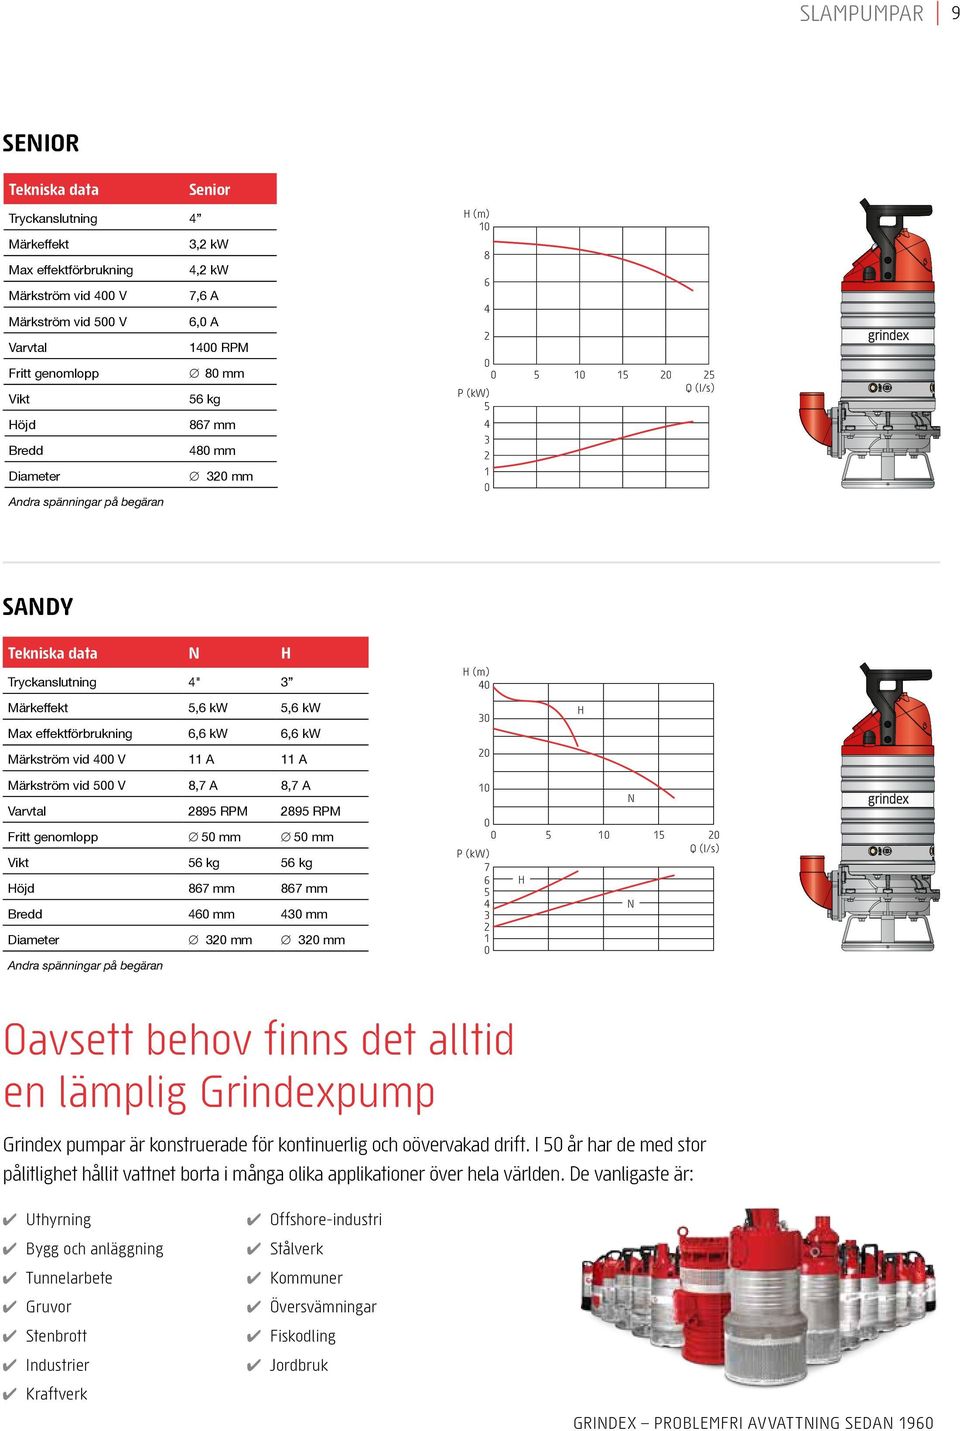 Grindexpump Grindex pumpar är konstruerade för kontinuerlig och oövervakad drift. I år har de med stor pålitlighet hållit vattnet borta i många olika applikationer över hela världen.